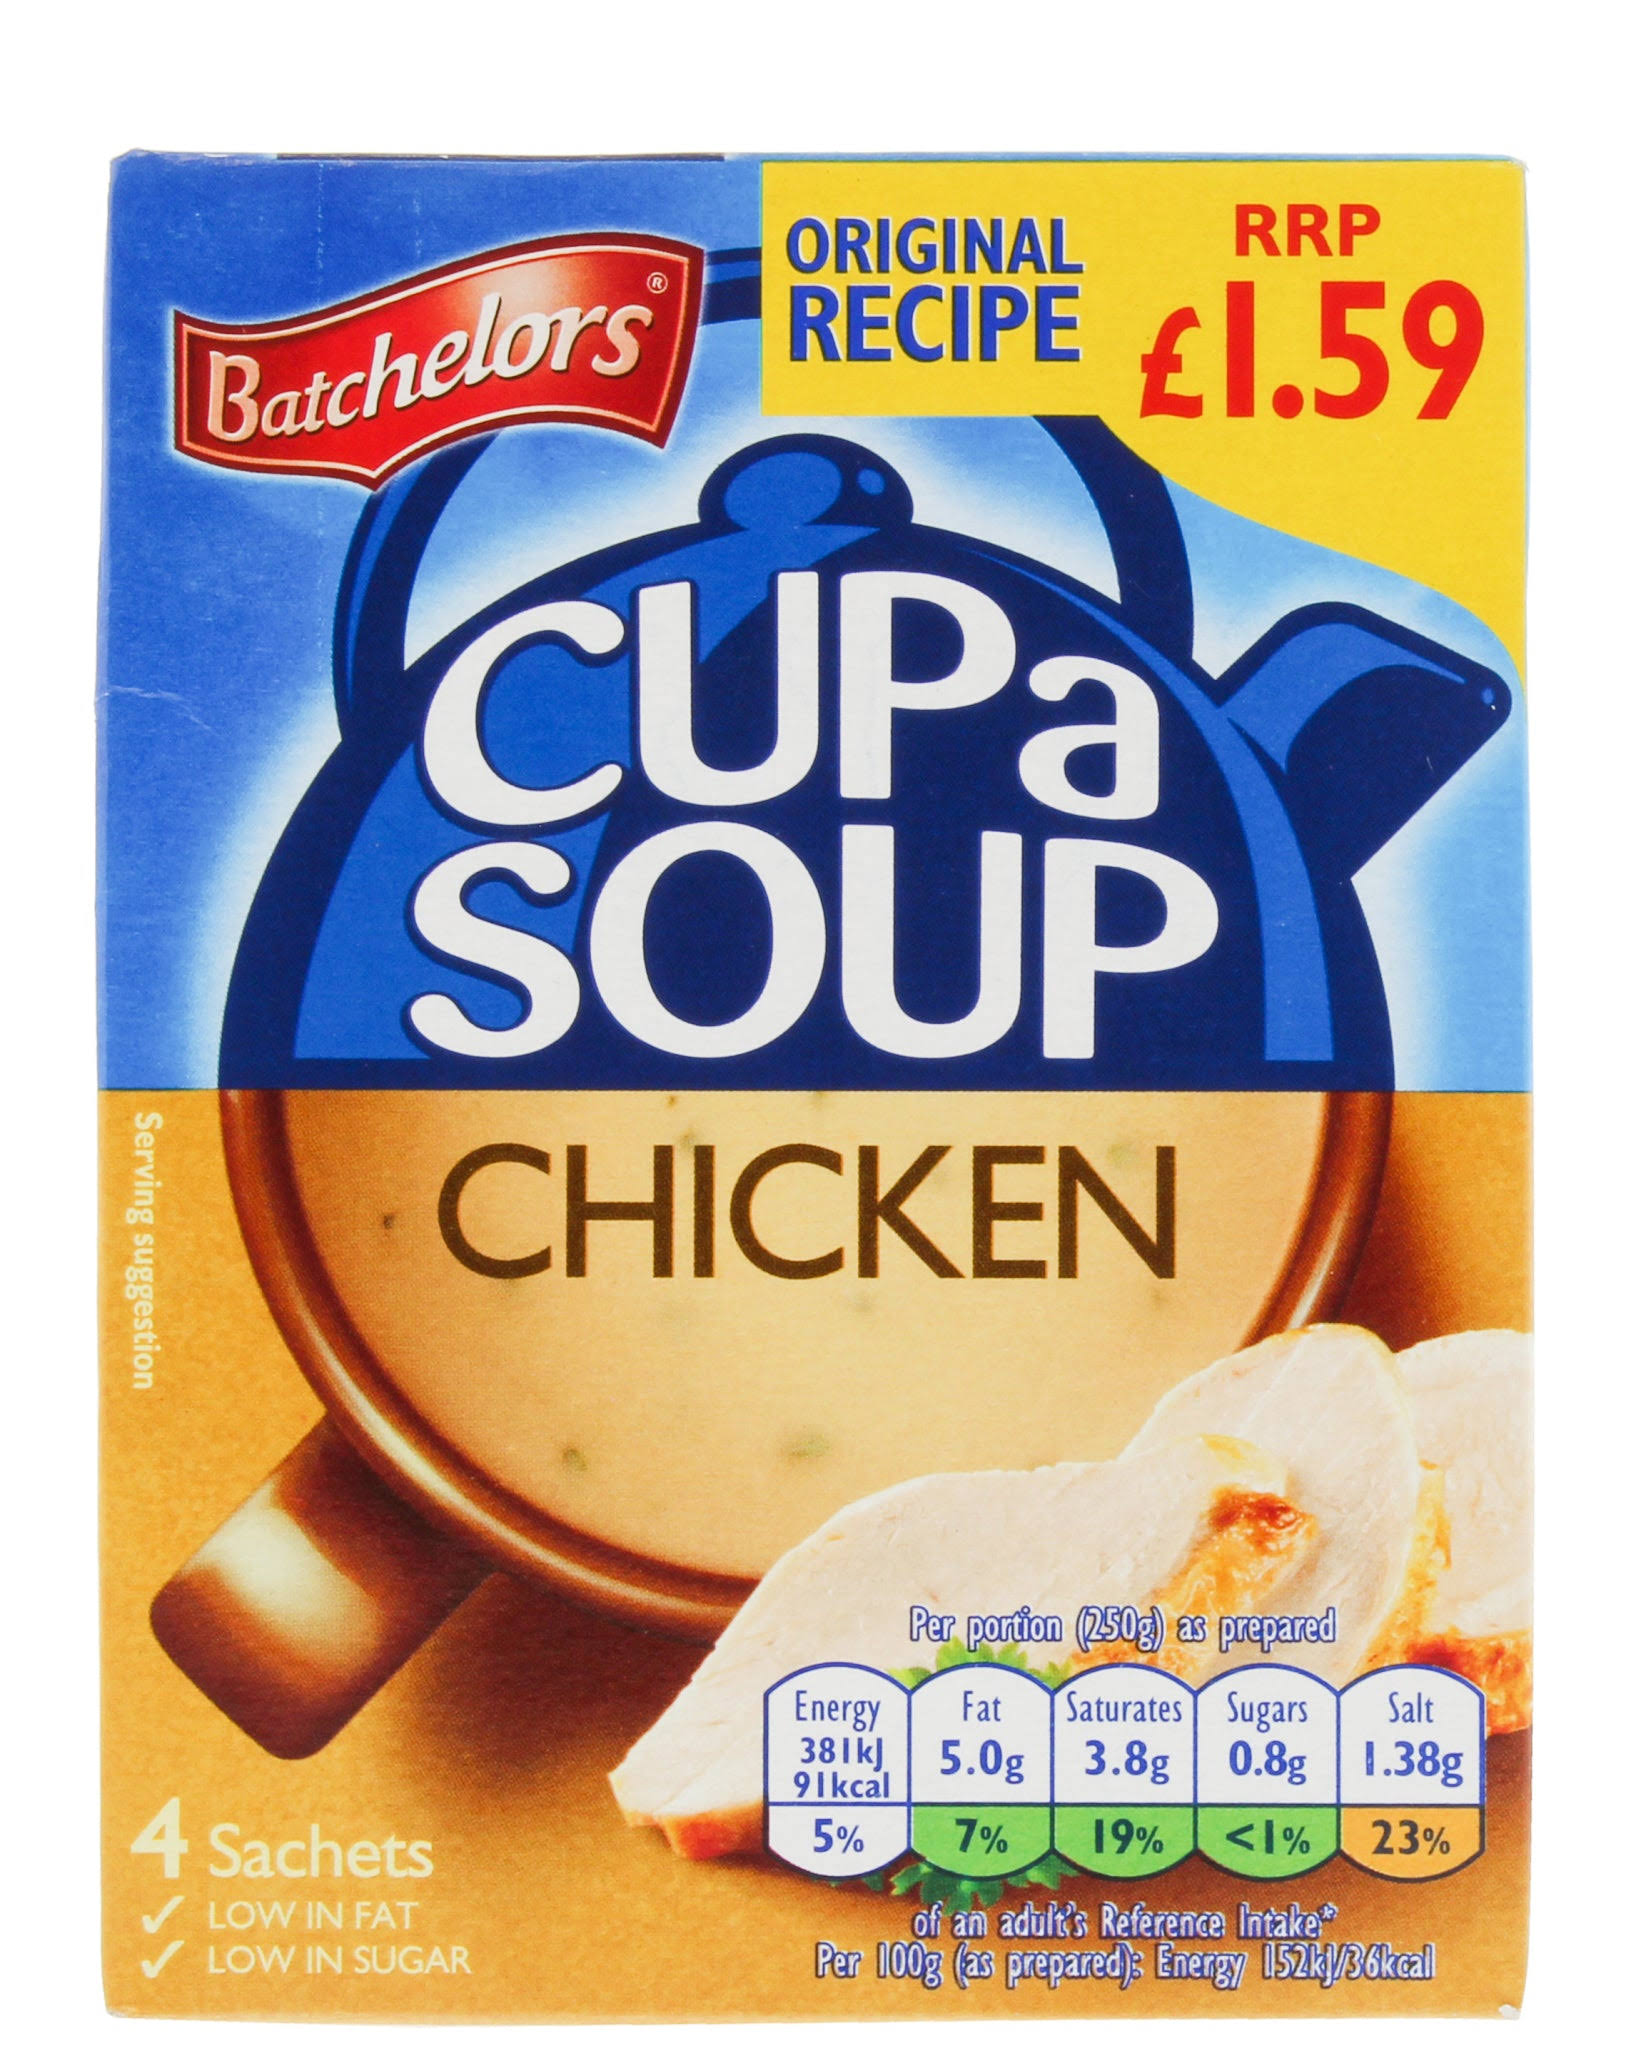 Batchelors Cup A Soup - Chicken, 81g, 4 Sachets